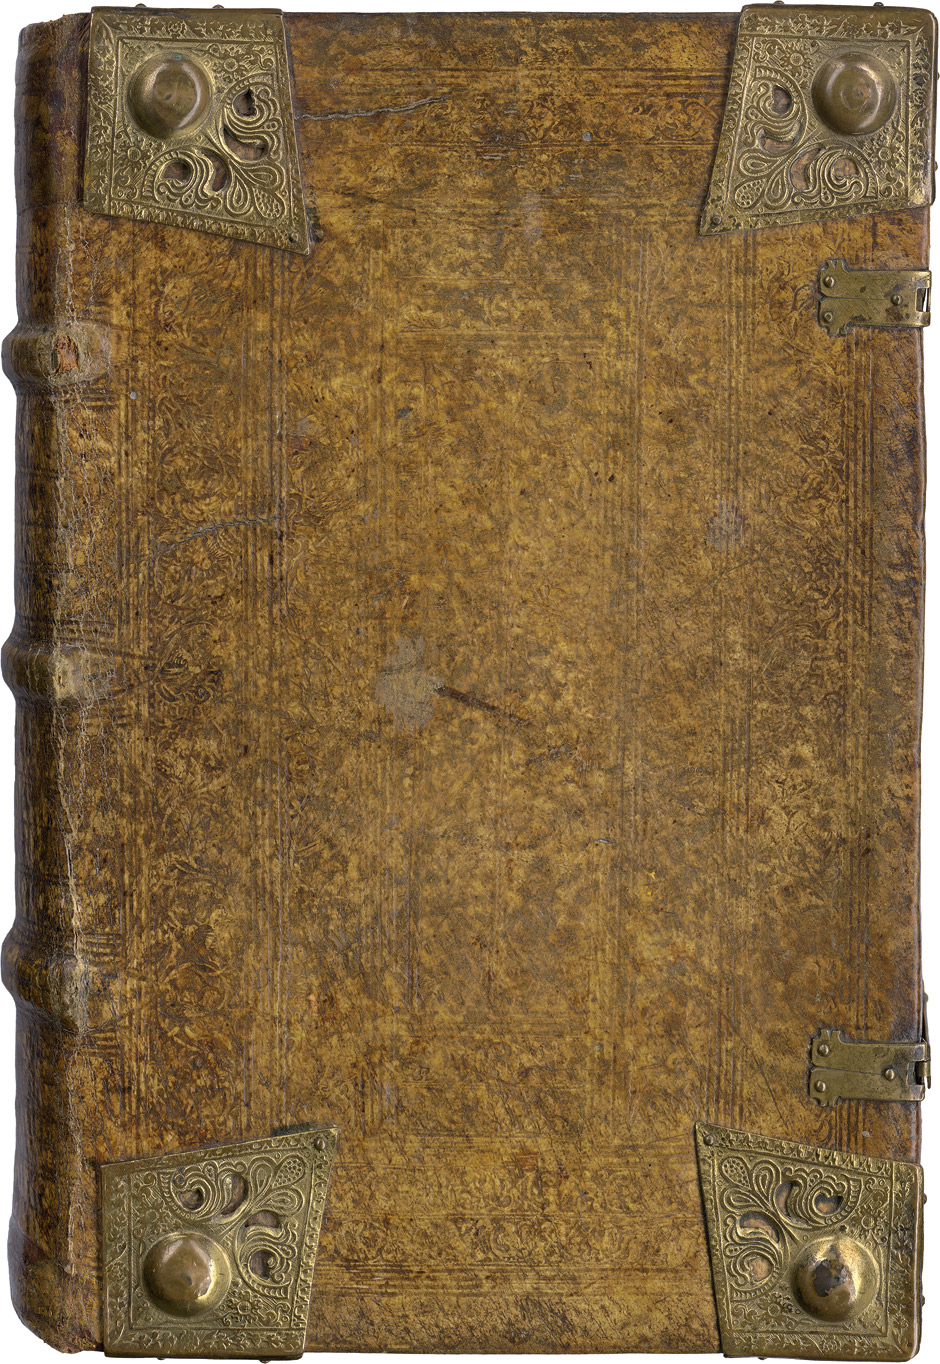 Lot 1105, Auction  115, Erasmus von Rotterdam, Desiderius, Paraphrases in libros Novi Testamenti. 3 Werke in 1 Band